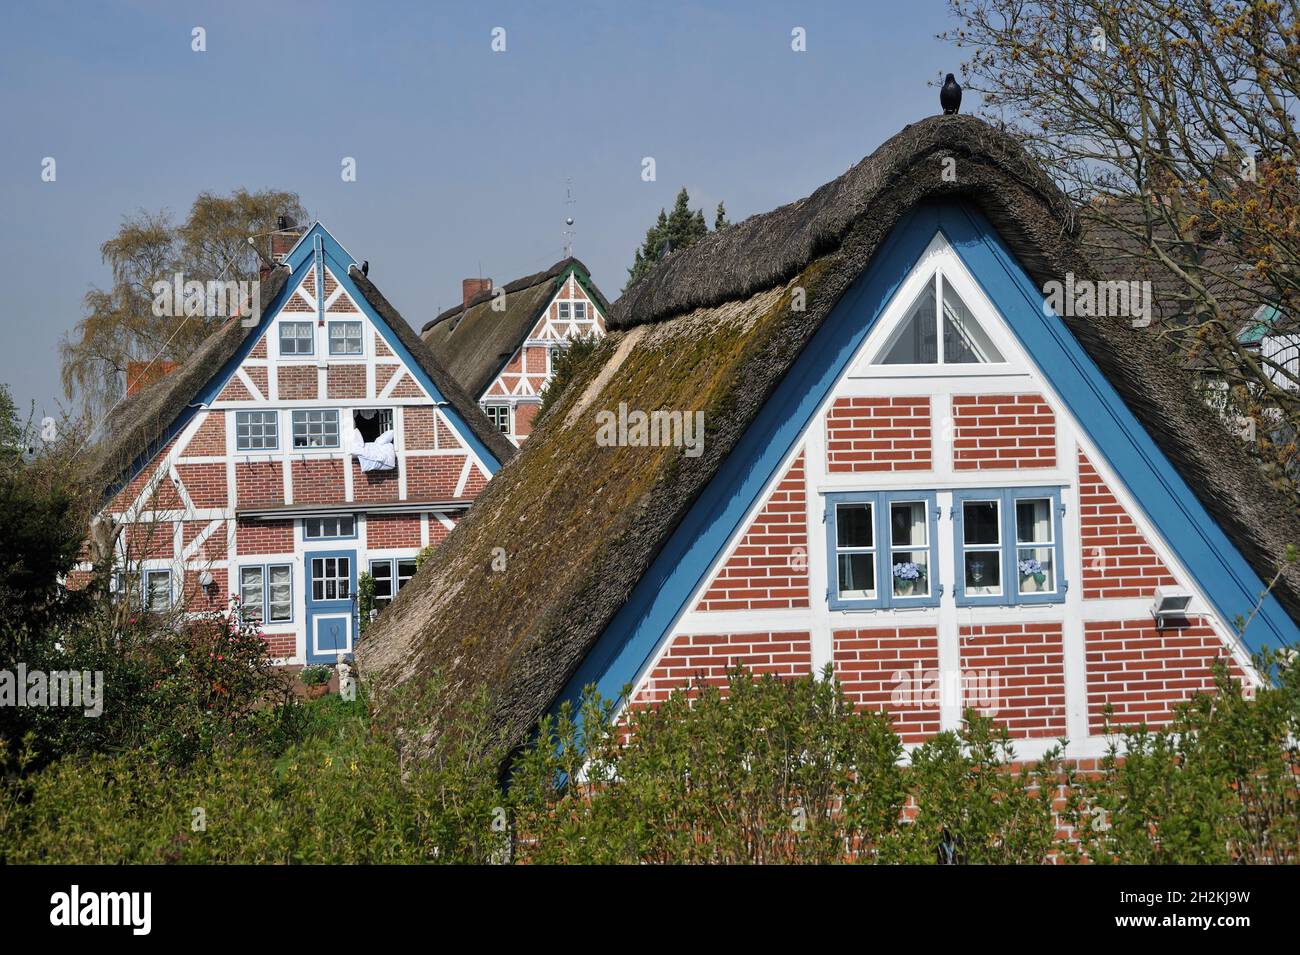 Häuser in Steinkirchen, Samtgemeinde Lühe im Landkreis Stade, Niedersachsen, Deutschland Stock Photo